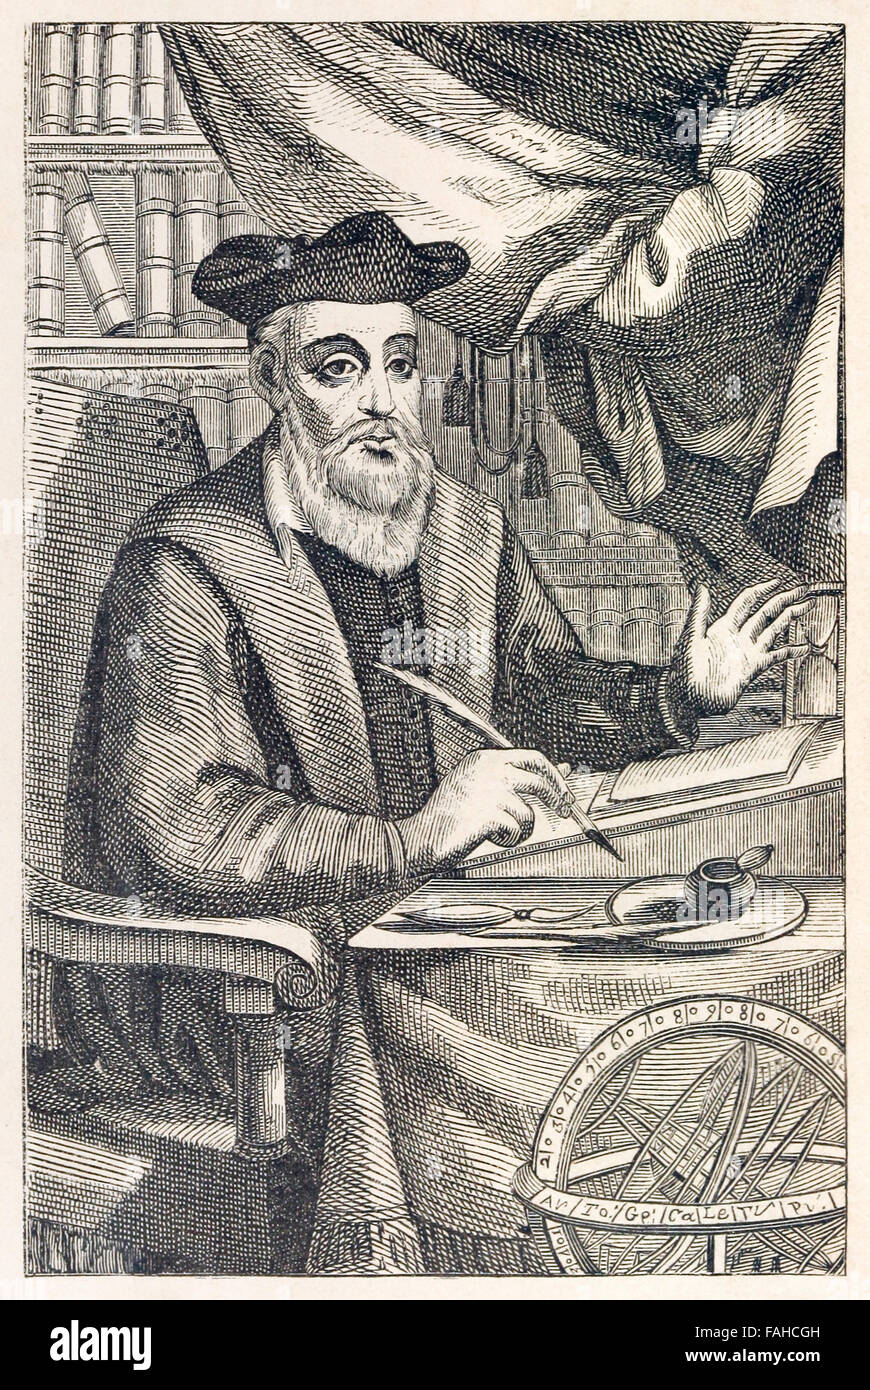 Nostradamus (1503-1566) schreiben seiner Prophezeiungen, Frontispiz von einer 1611-Edition von "Les Propheties de M. Michel Nostradamvs". Siehe Beschreibung für mehr Informationen. Stockfoto